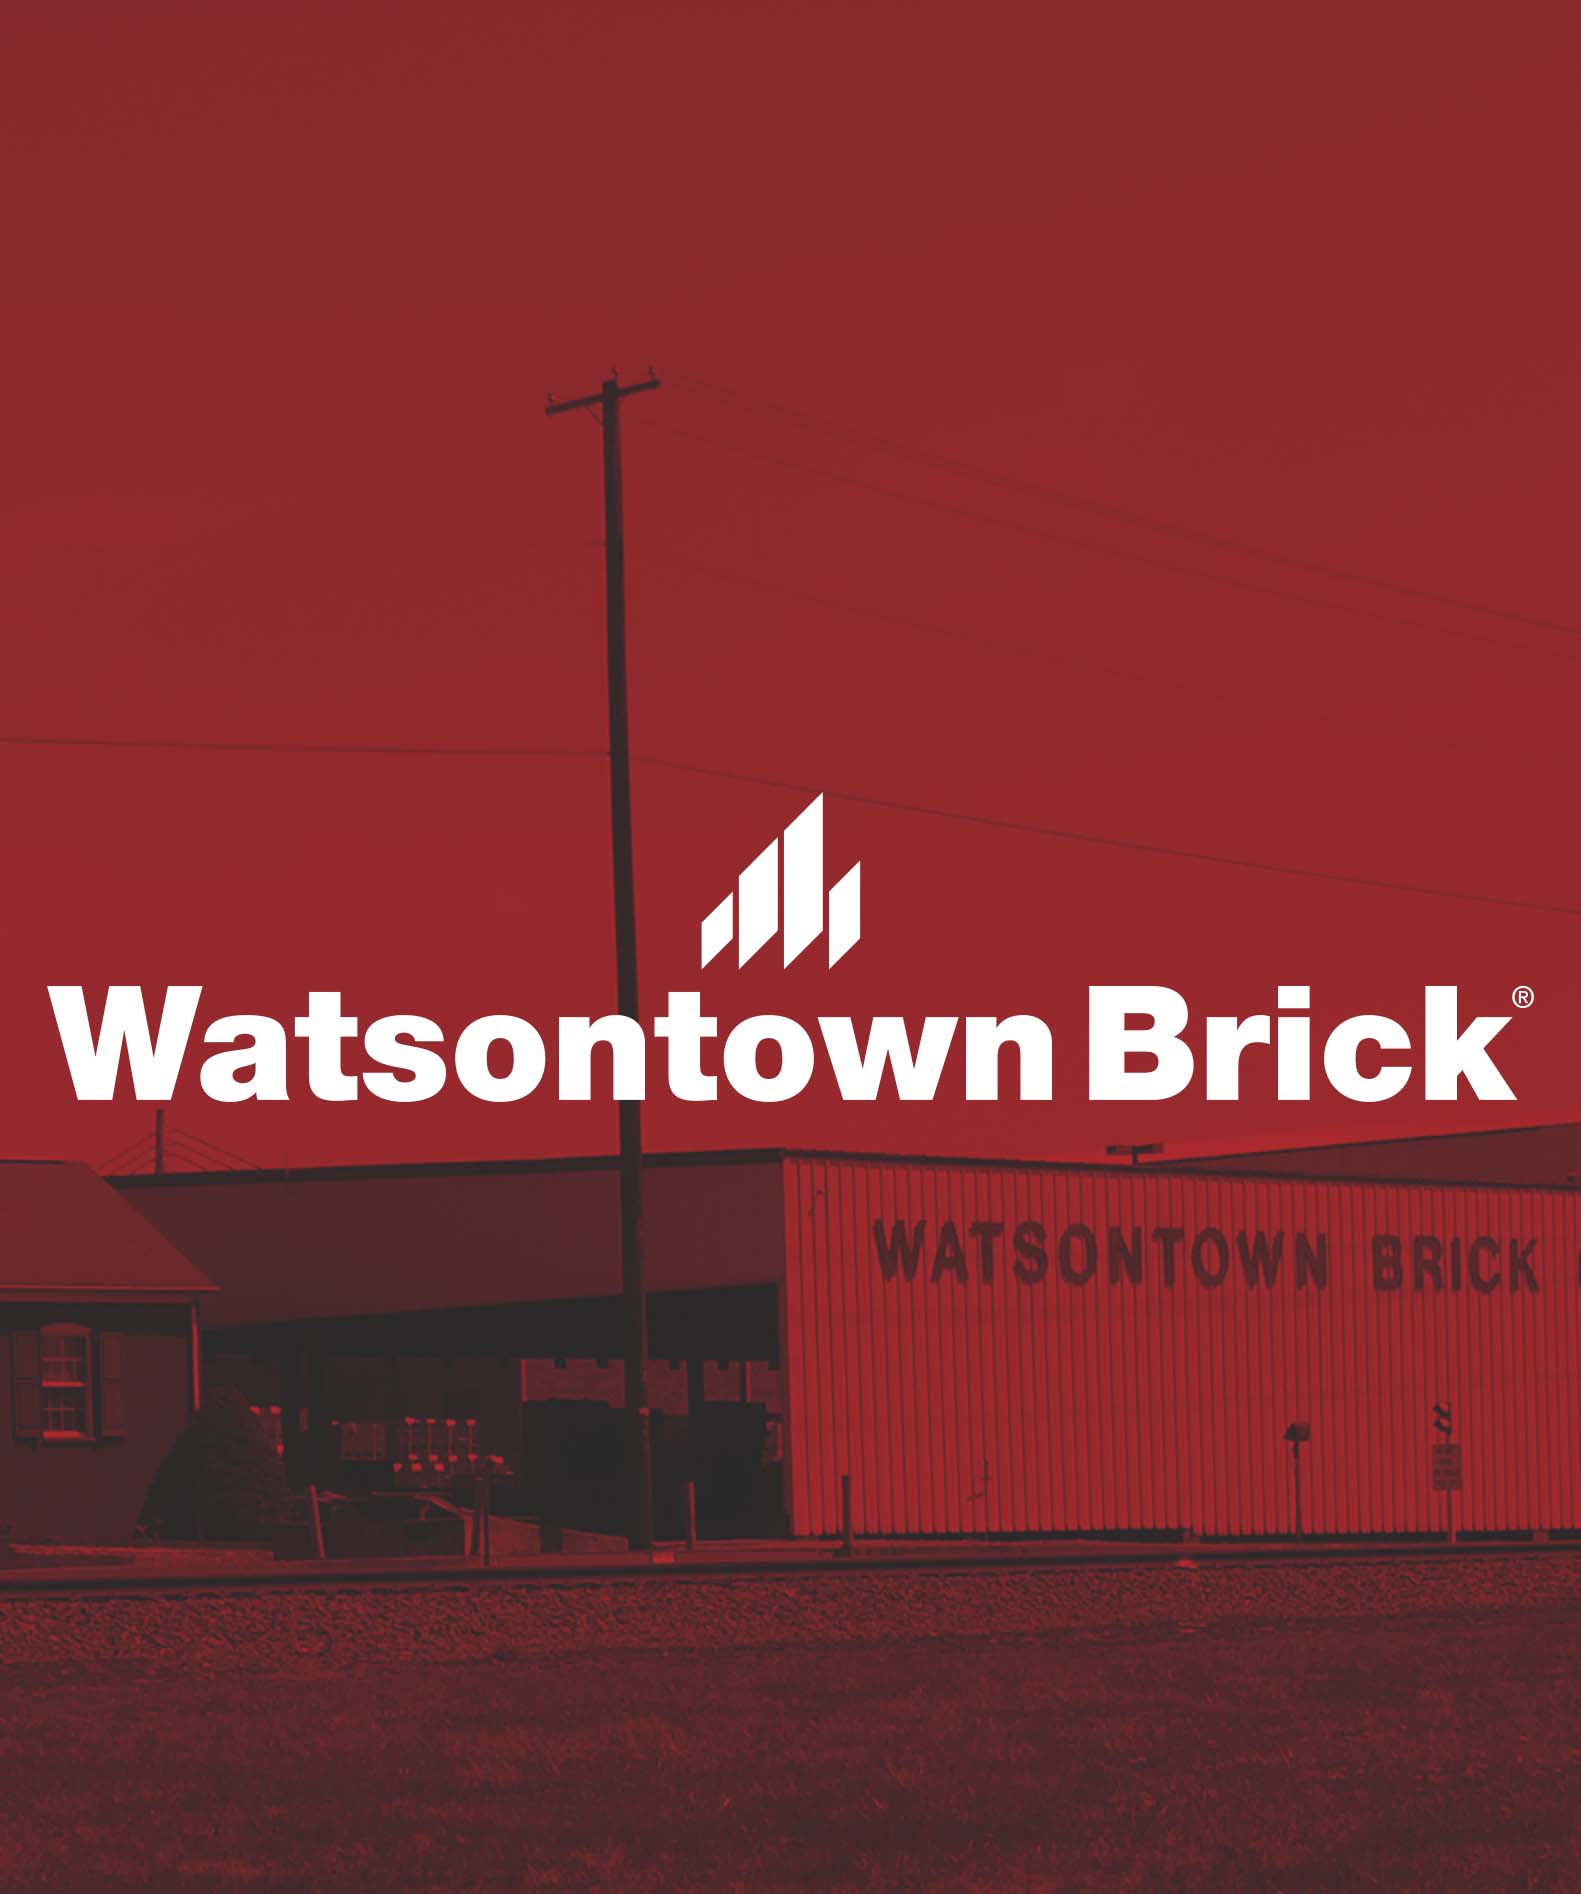 WatsontownBrick-CareersPage-GraphicVertical